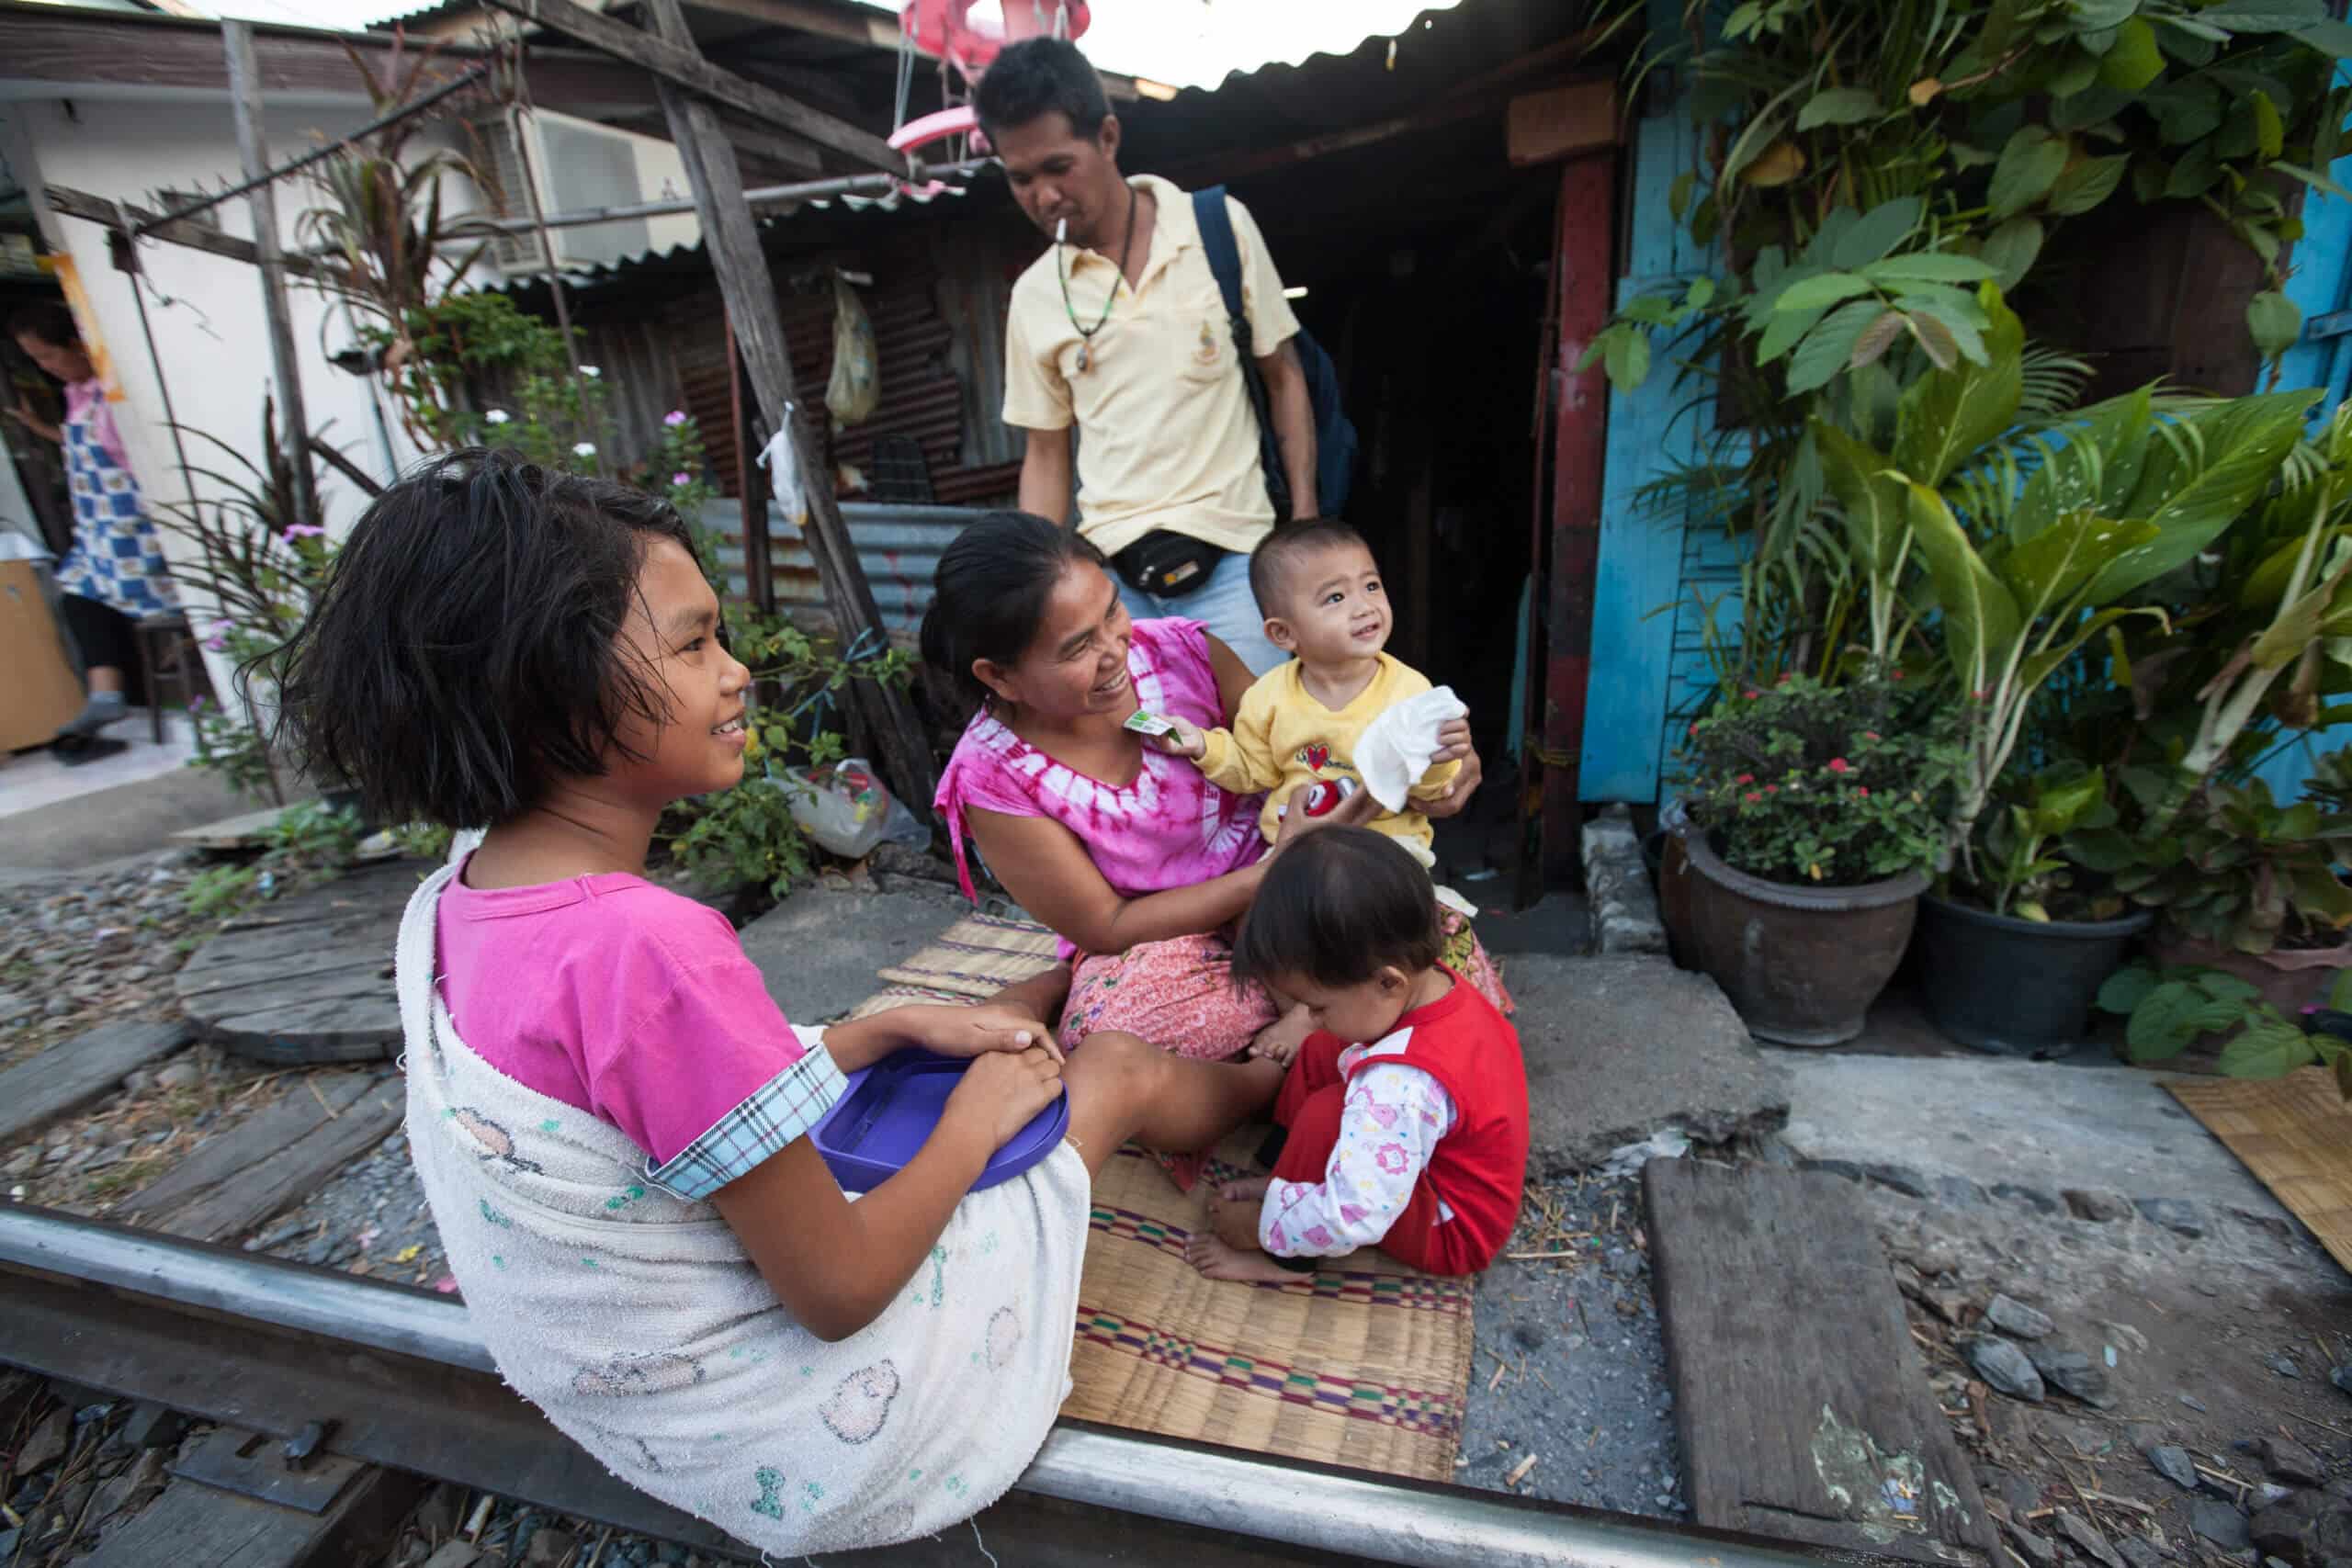 משפחה בשכונת עוני בבנגקוק.  <a href="https://depositphotos.com. ">המחשה: depositphotos.com</a>